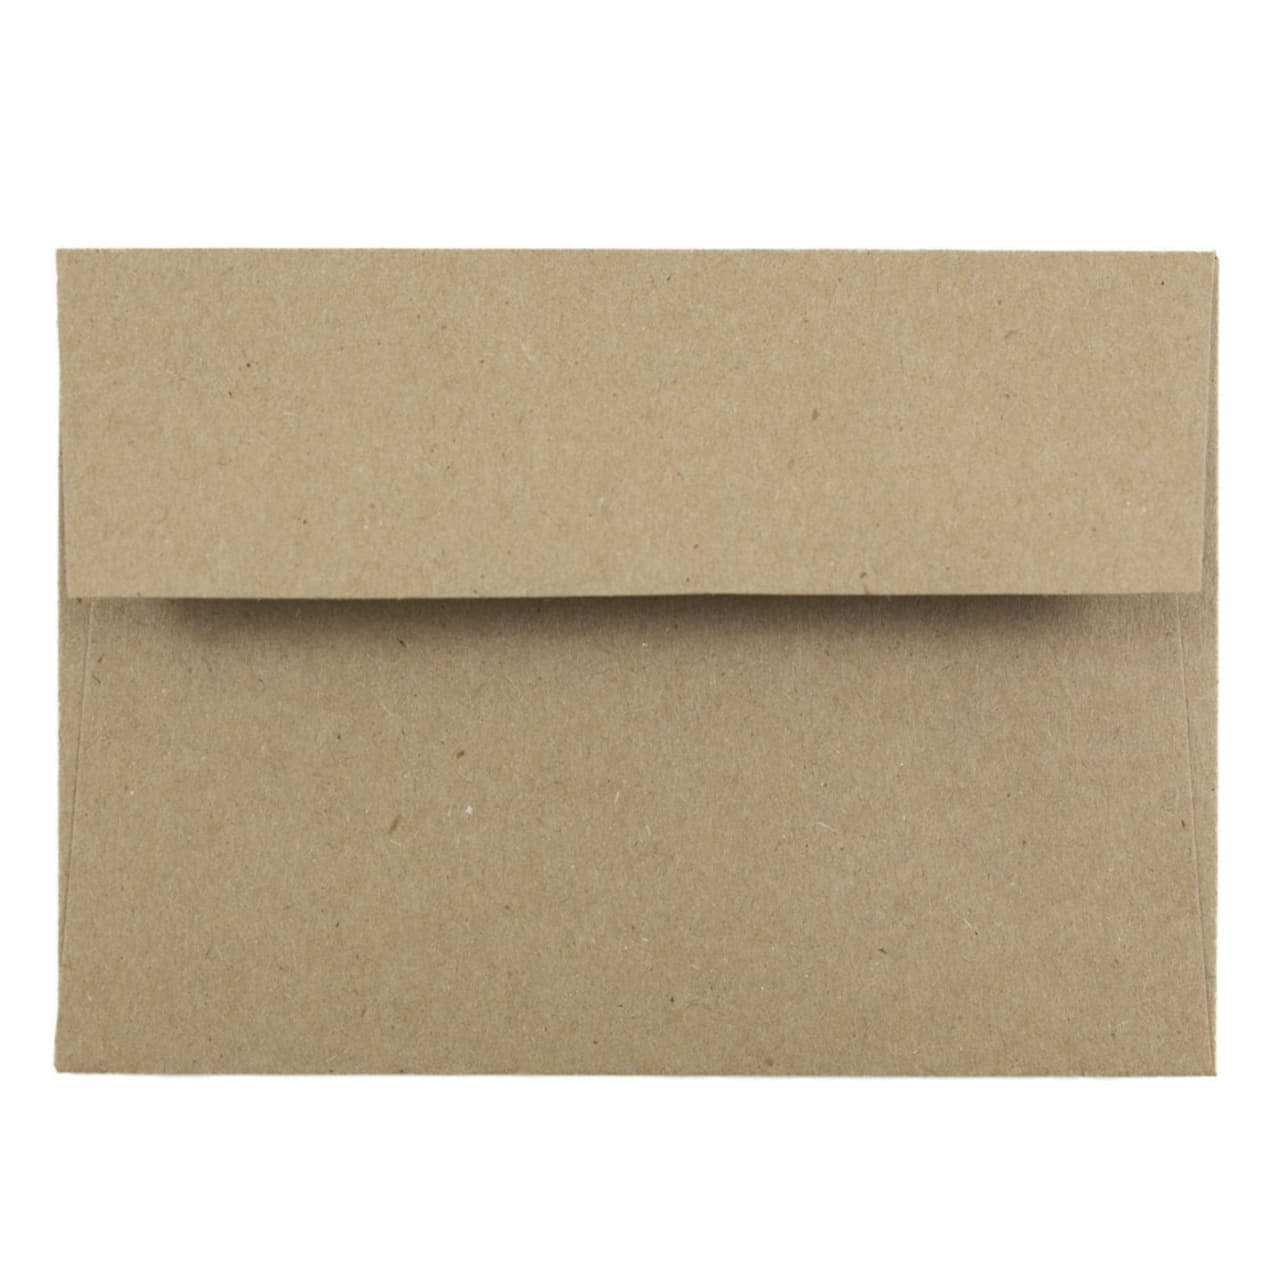 JAM Paper A1 Premium Invitation Envelopes, 50ct.